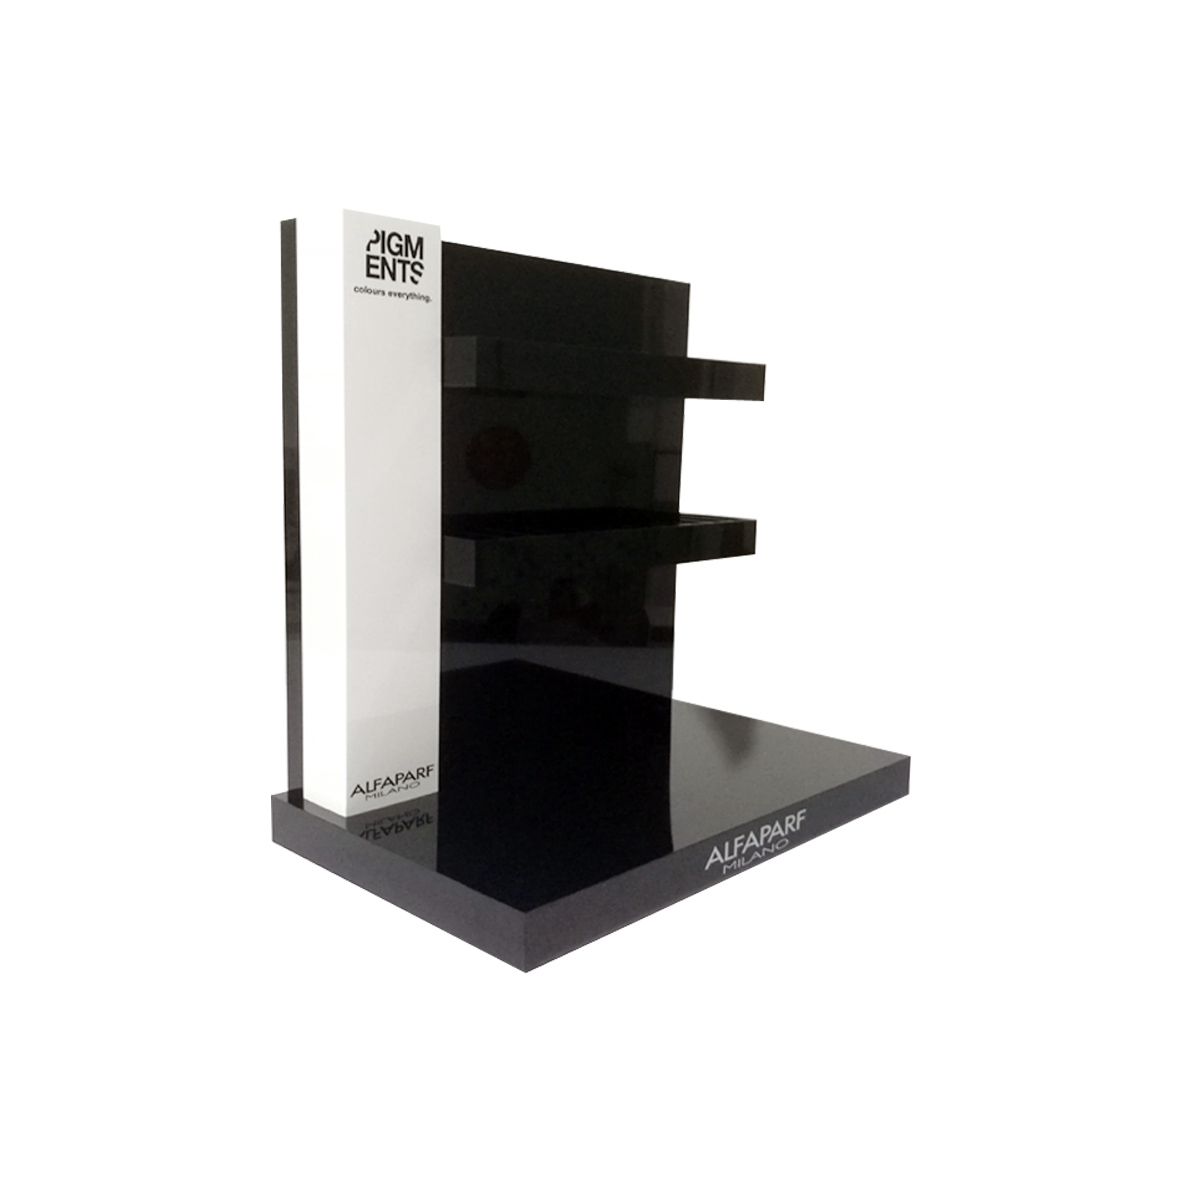 Acrylic nail polish display stand/perfume countertop display racks